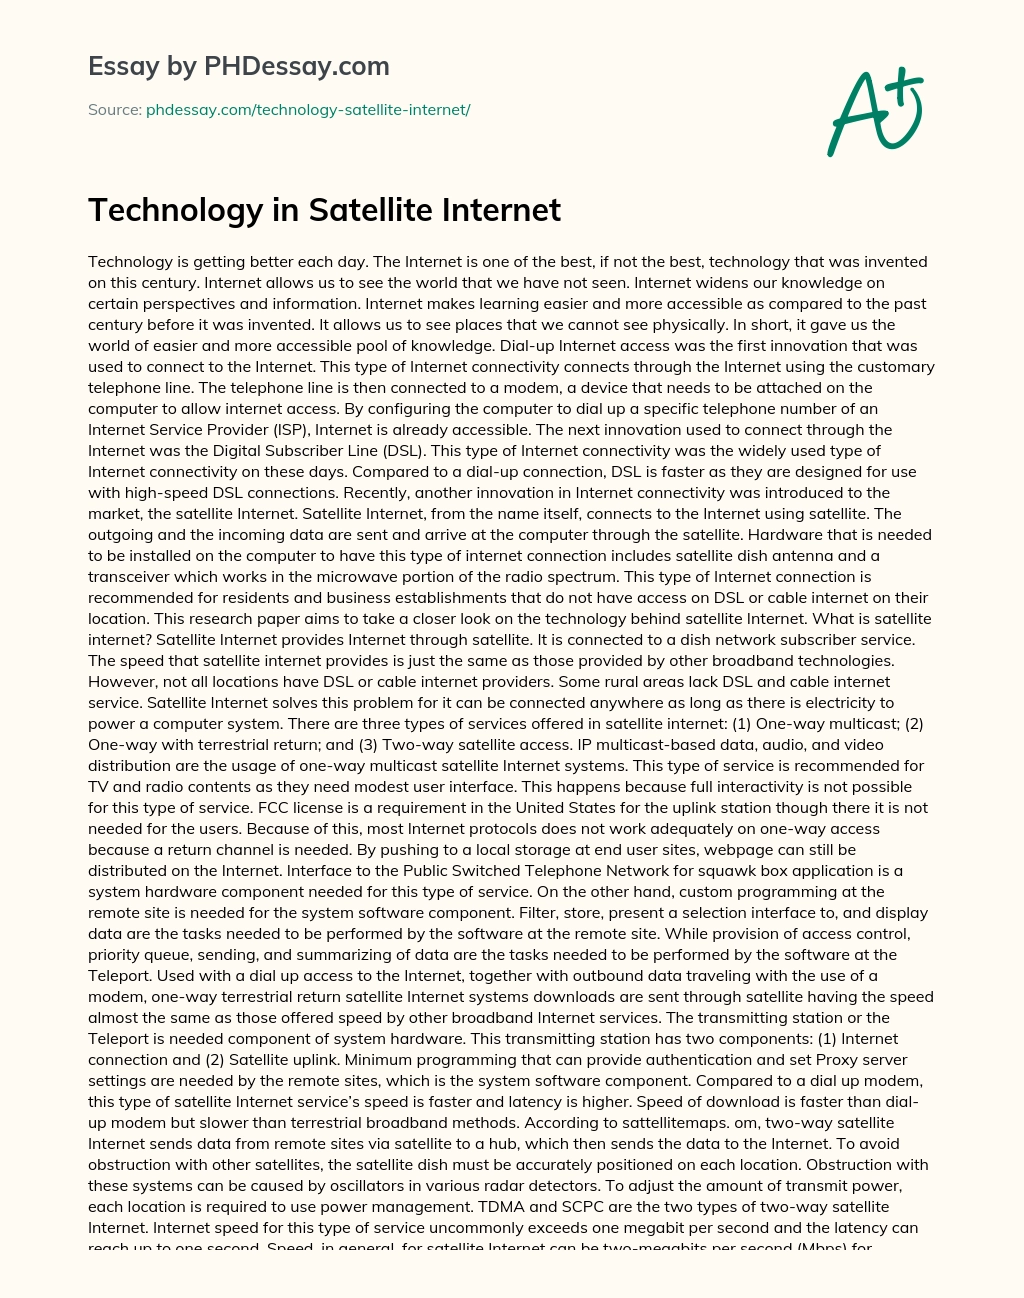 Technology in Satellite Internet essay